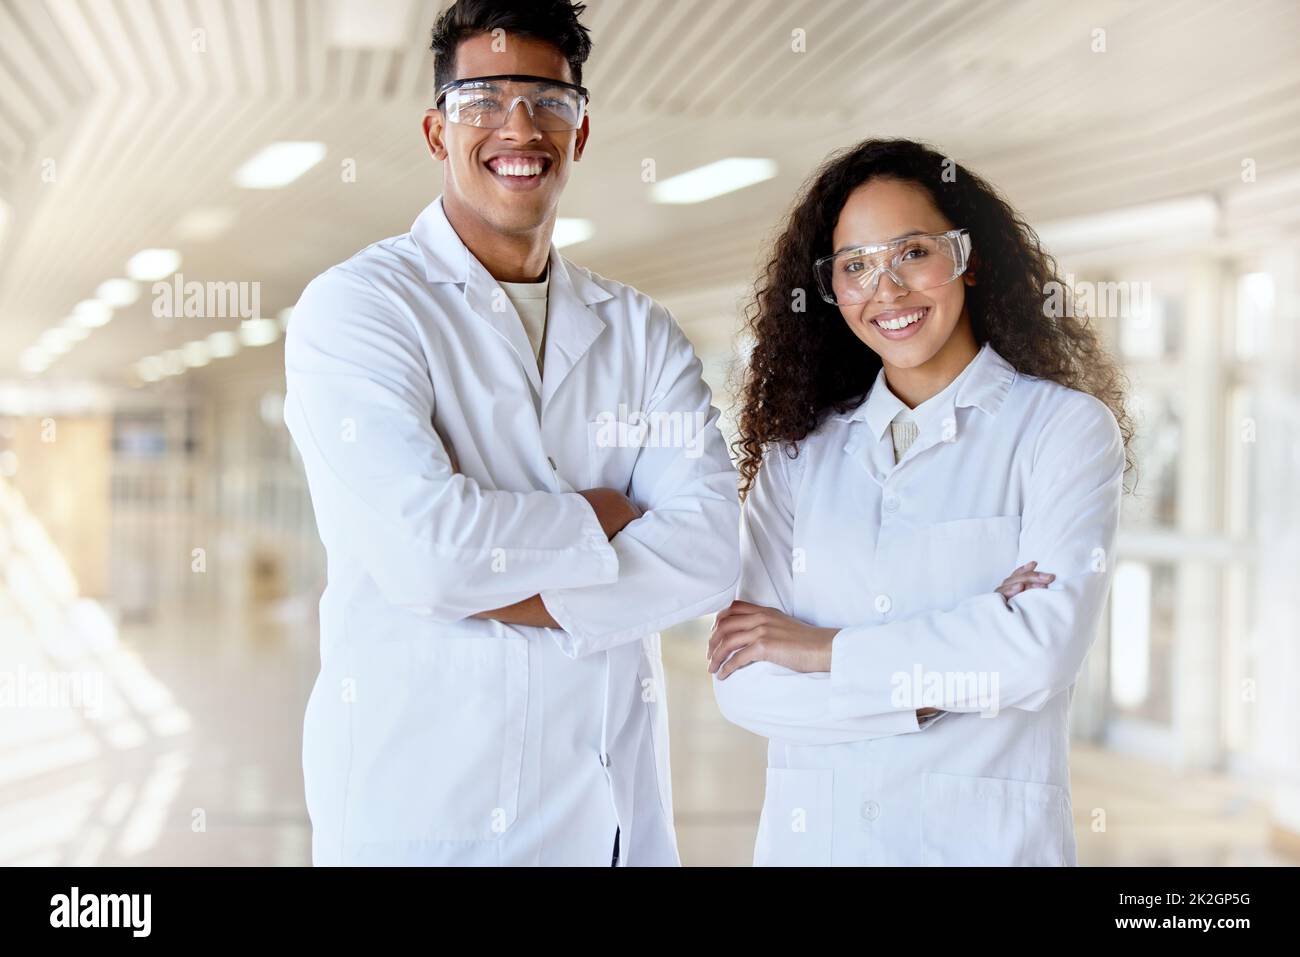 Scientifiques de l'avenir. Portrait court de deux jeunes étudiants en sciences debout avec leurs bras pliés dans un couloir du campus. Banque D'Images